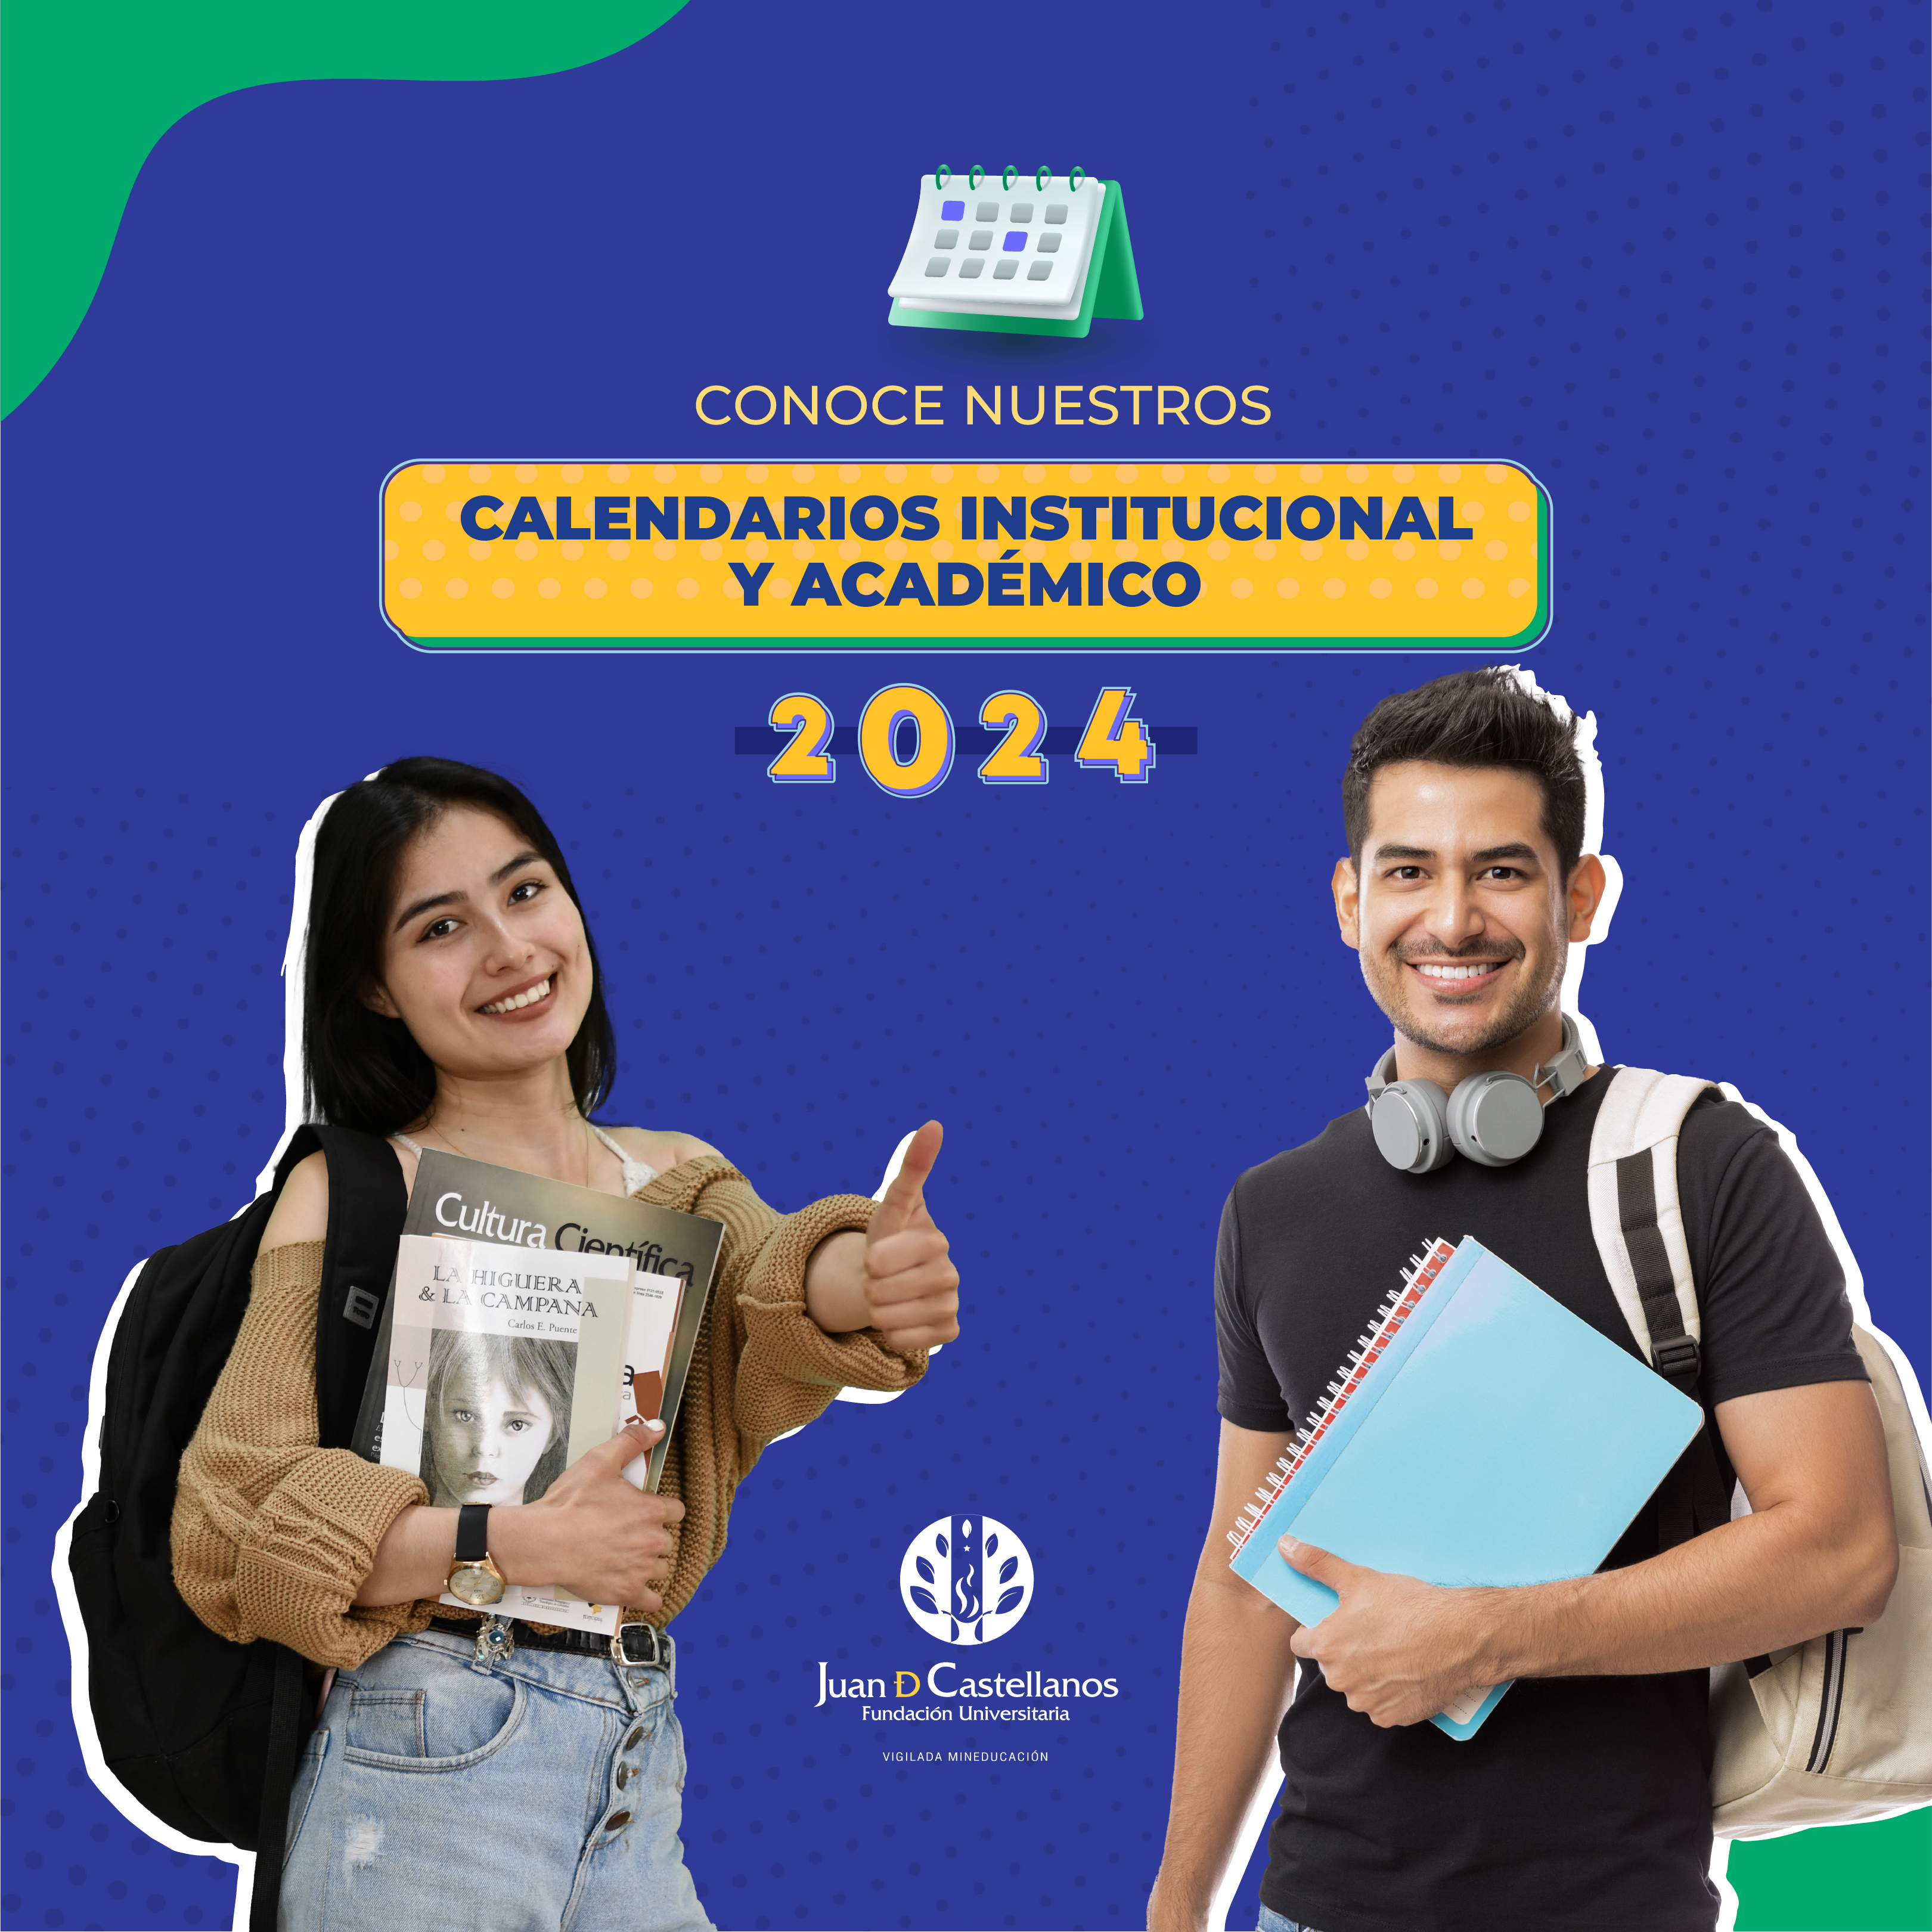 ¡Estos son los Calendarios Institucional y Académico 2024!